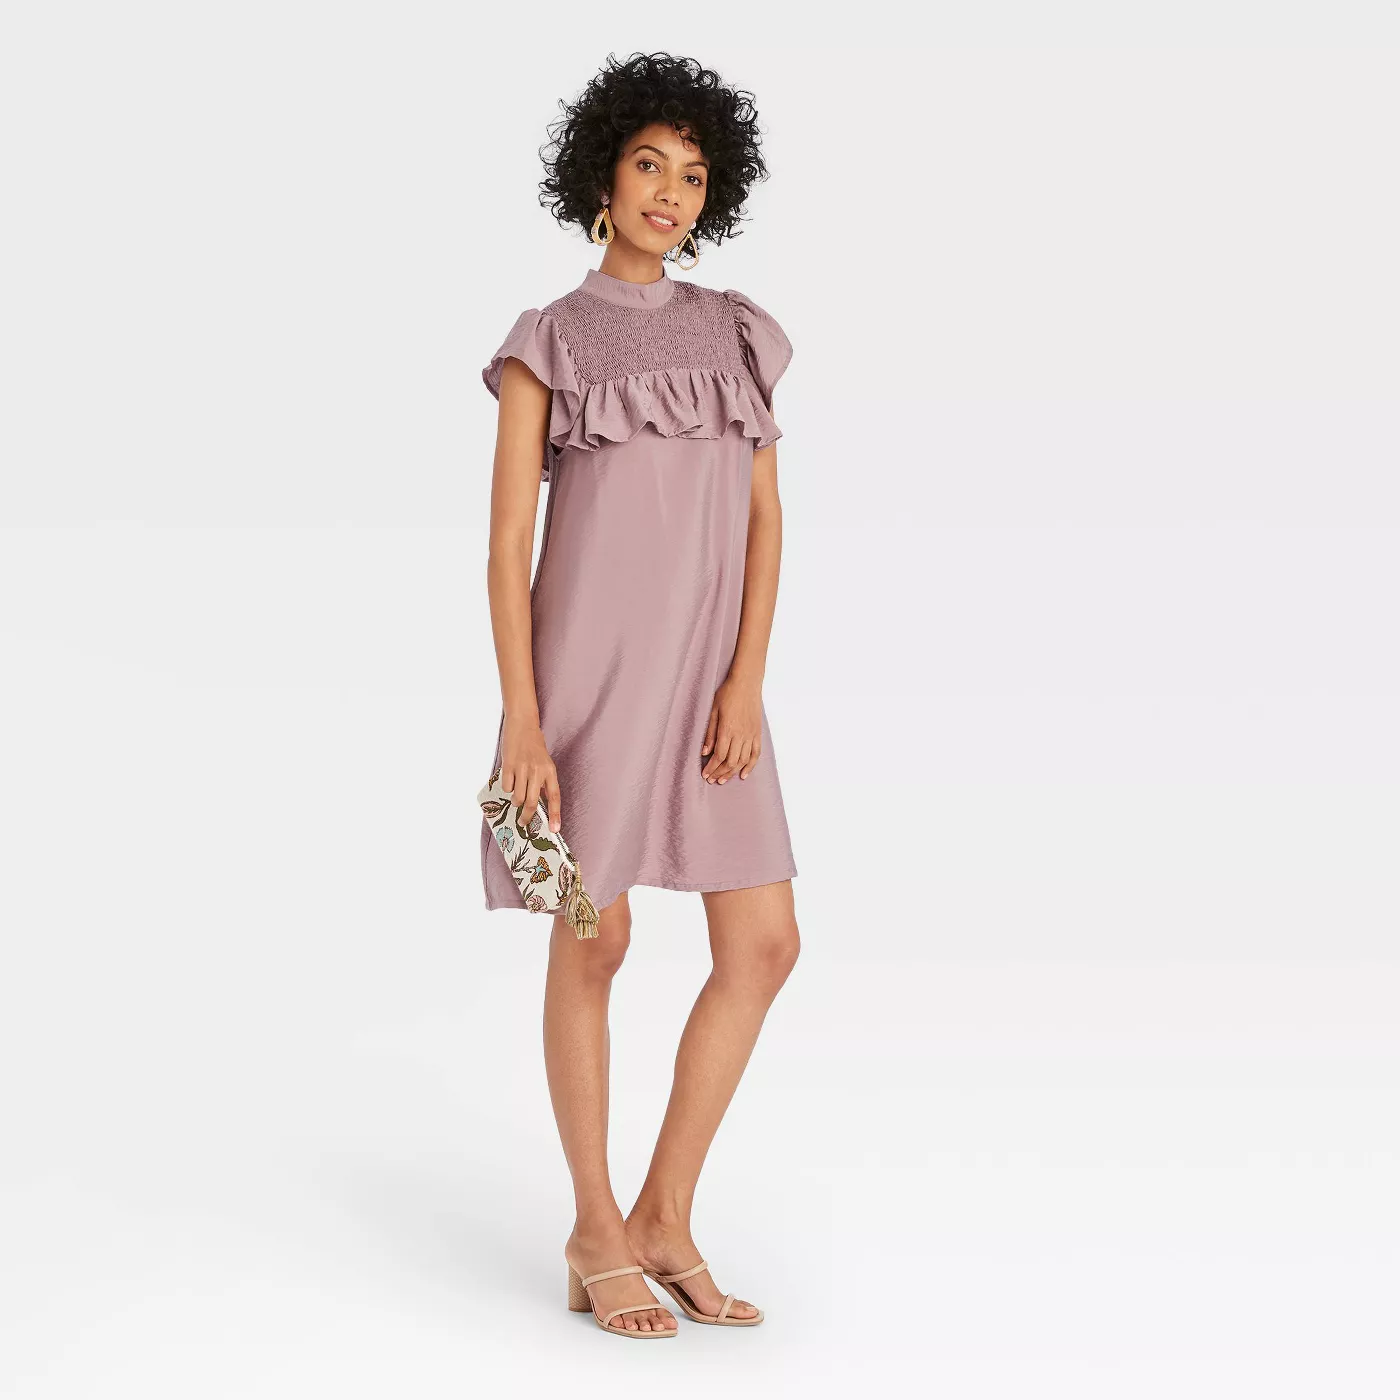 Women's Sleeveless Ruffle Yoke Dress - A New Day™ - image 1 of 6